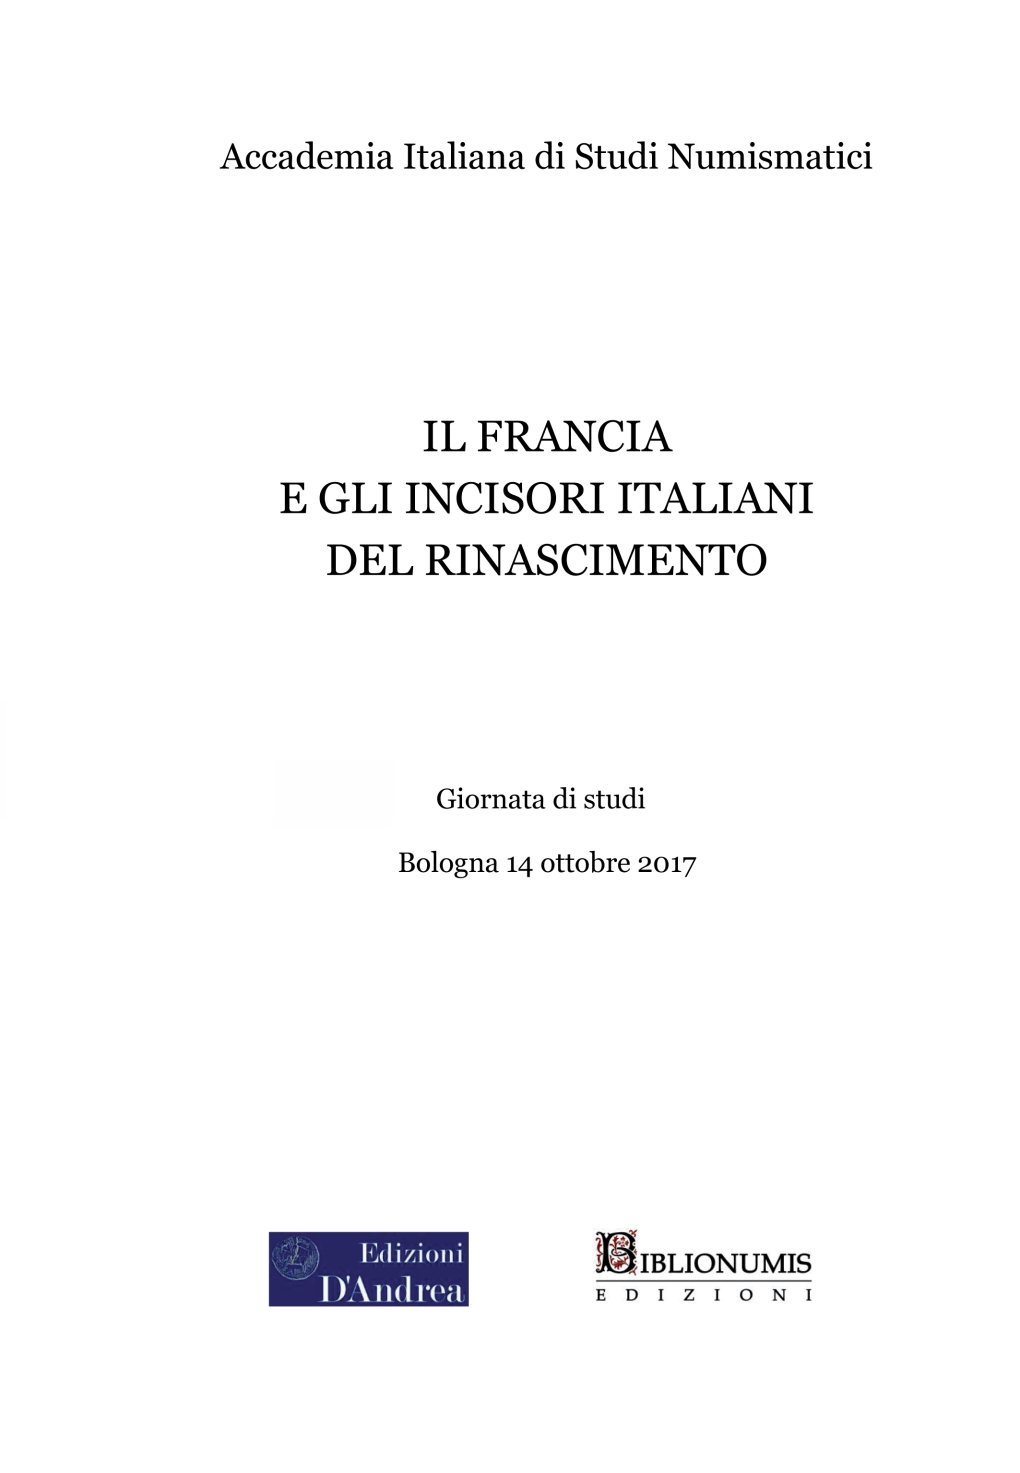 Saetti Franco, 2019, Incisori Rinascimentali Nelle Corti Padane